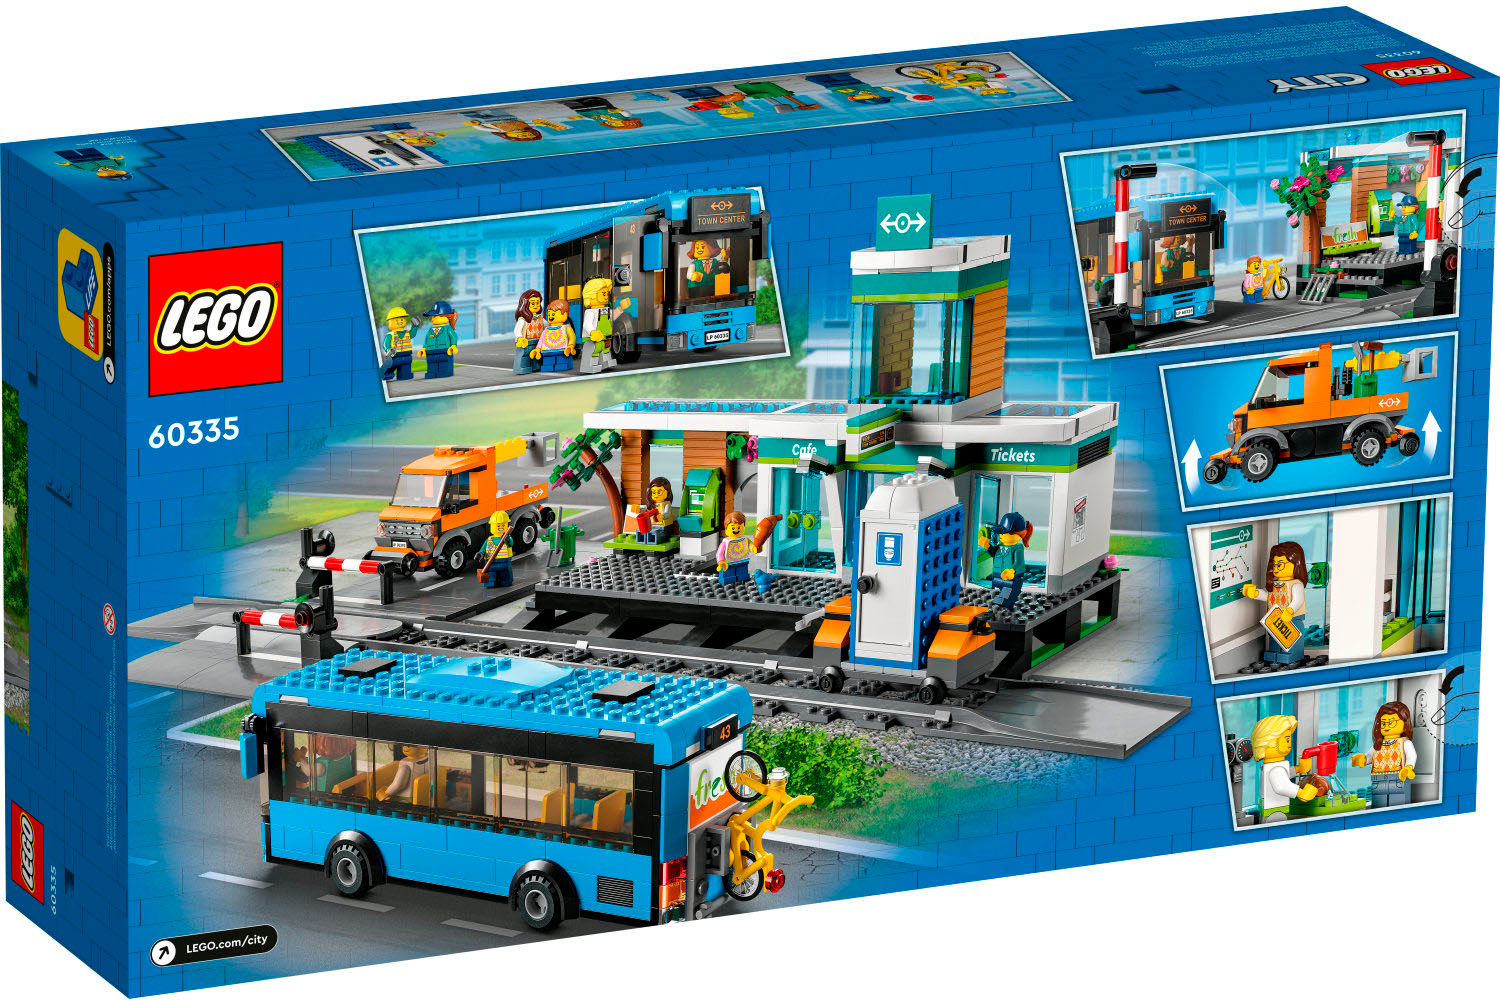 Barber Rundt og rundt Decimal LEGO City Train Station 60335 6385807 - Best Buy